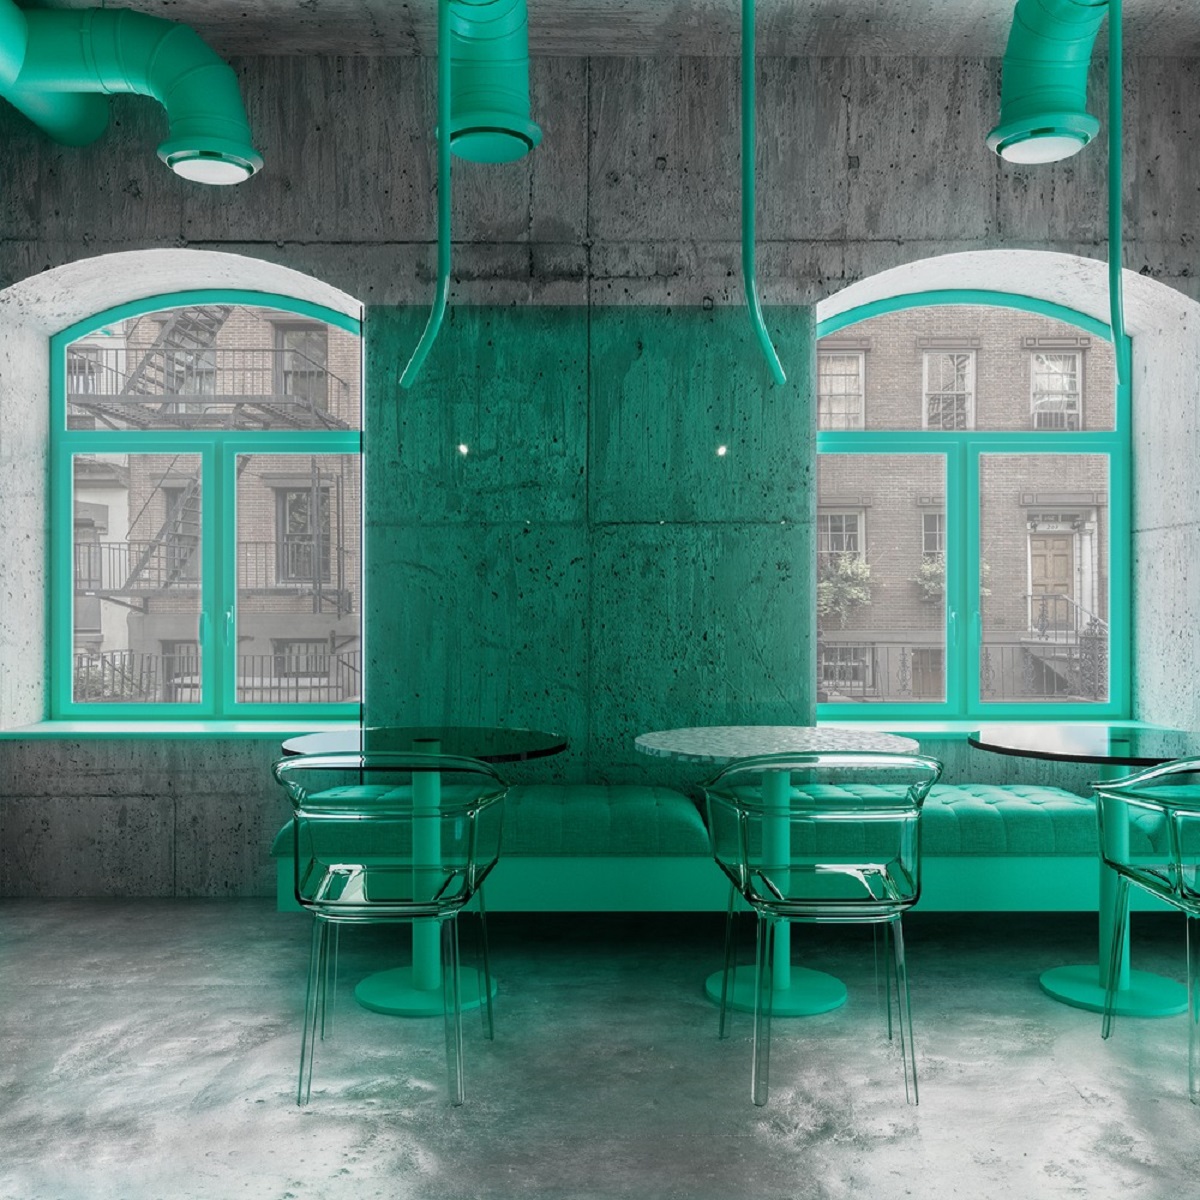 interiorDaily-quan-cafe-mau-xanh-o-new-york-reutov-design